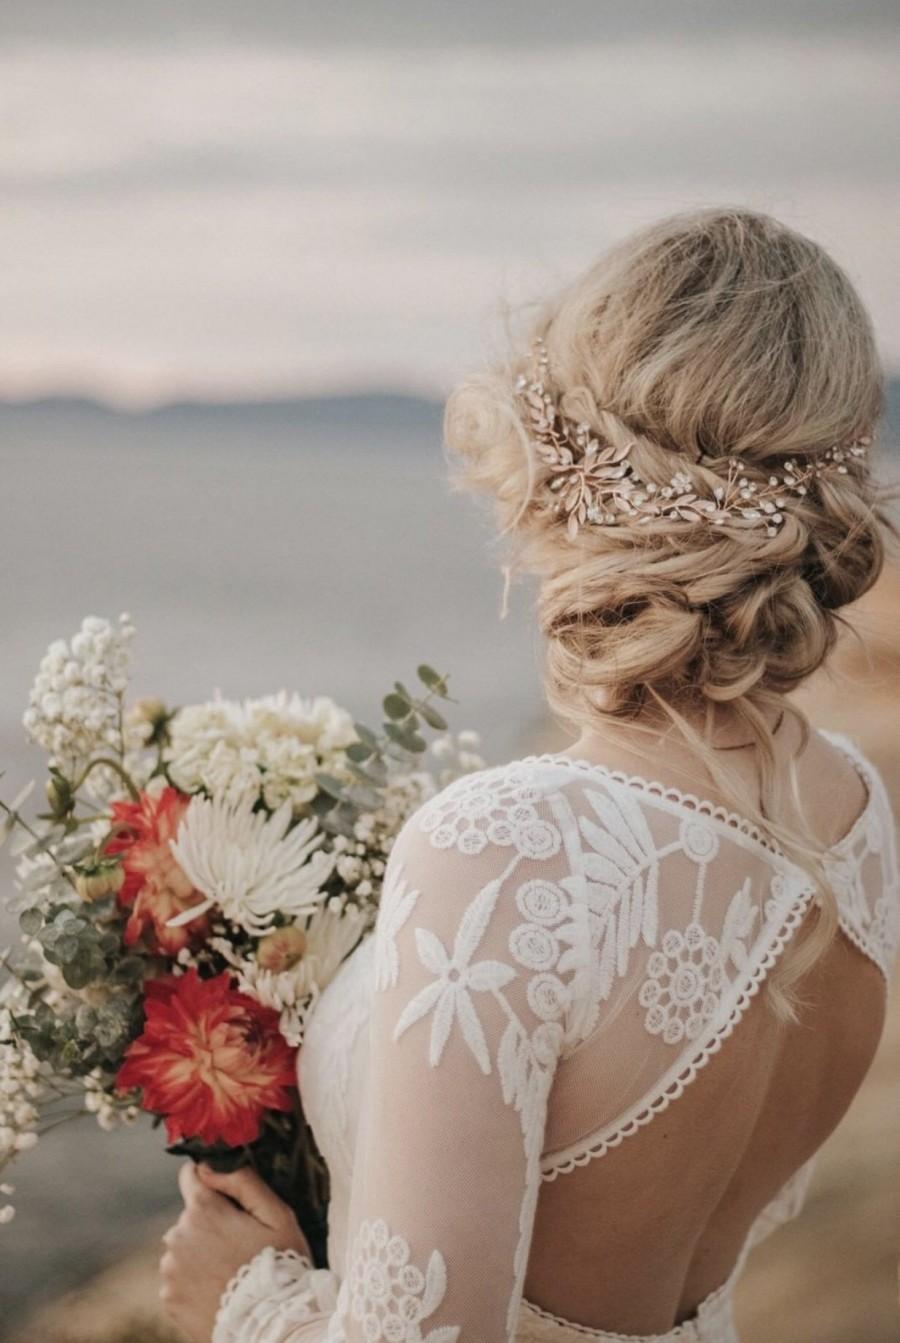 زفاف - Light Rose Gold Hair Accessory For The Modern Boho Bride, Leaf And Rhinestone Accents